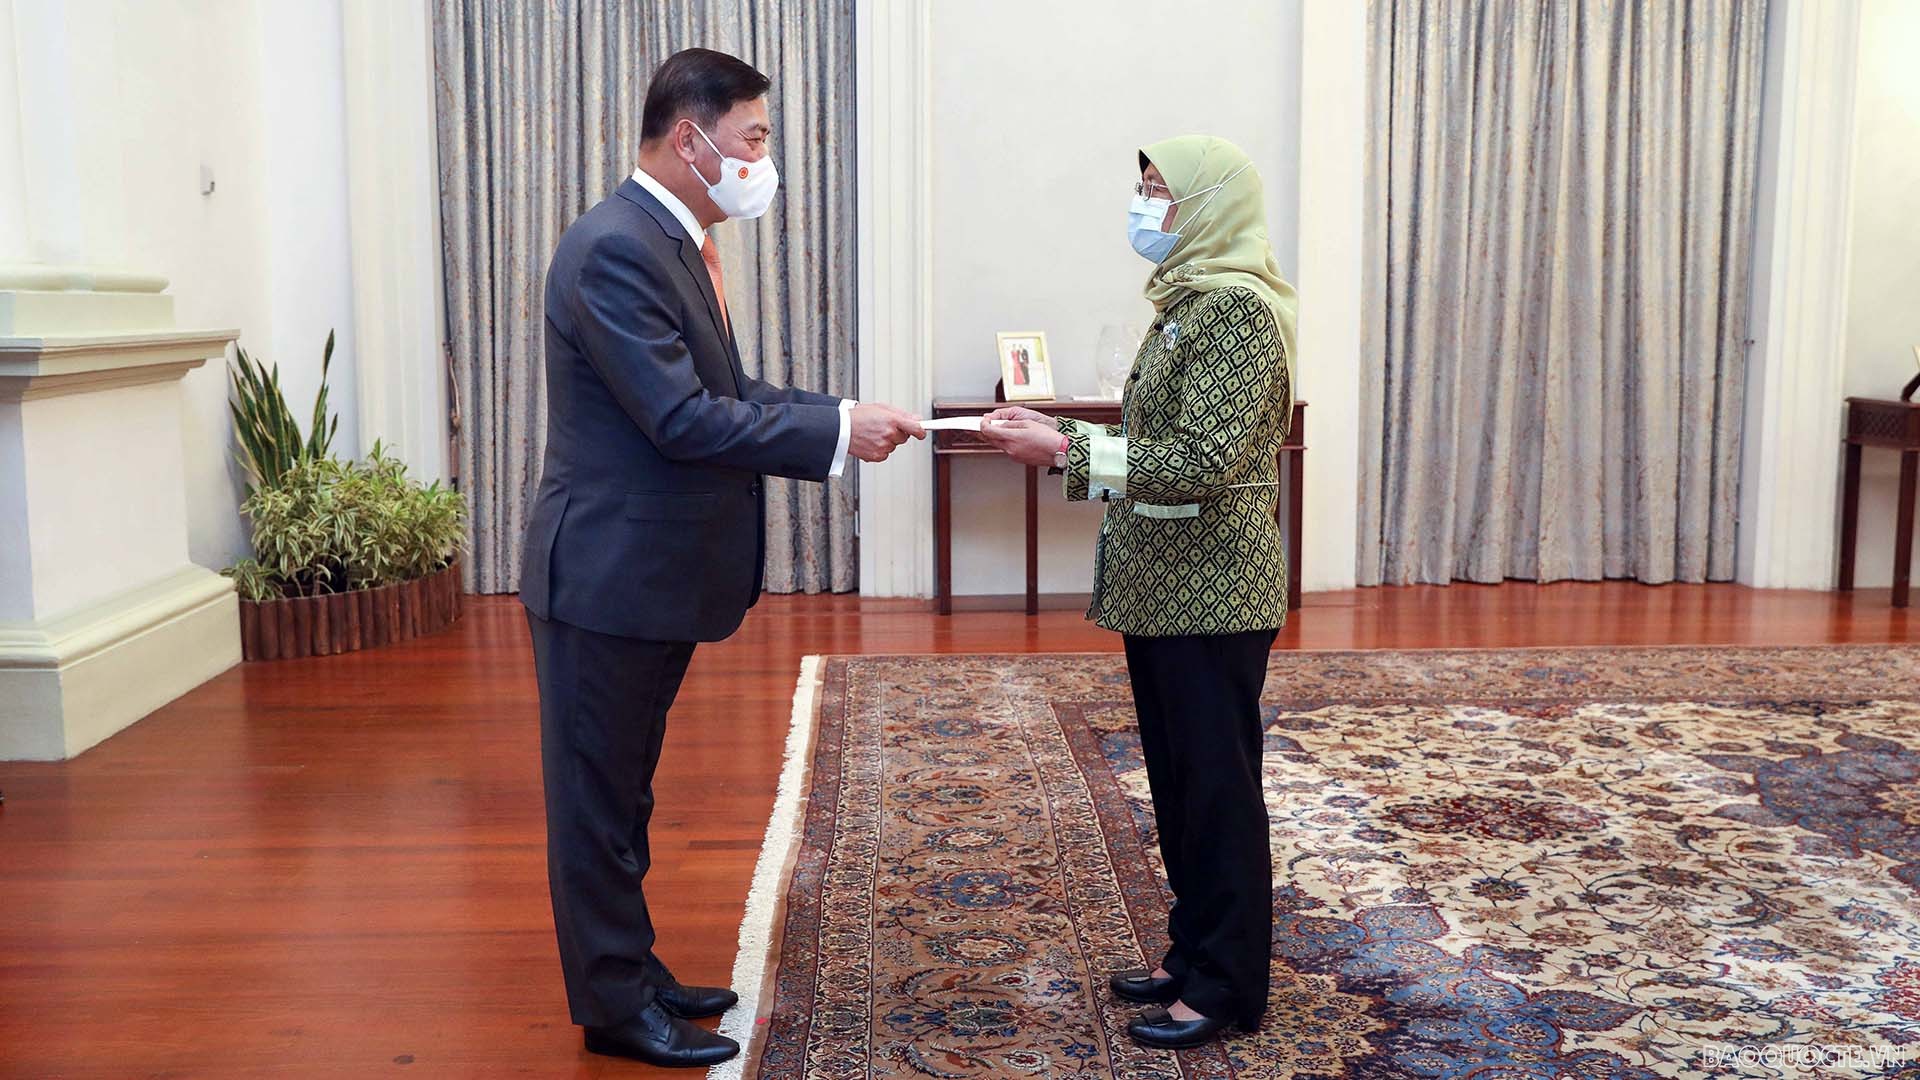 Đại sứ Việt Nam tại Singapore Mai Phước Dũng trình Thư ủy nhiệm lên Tổng thống Halimah Yacob